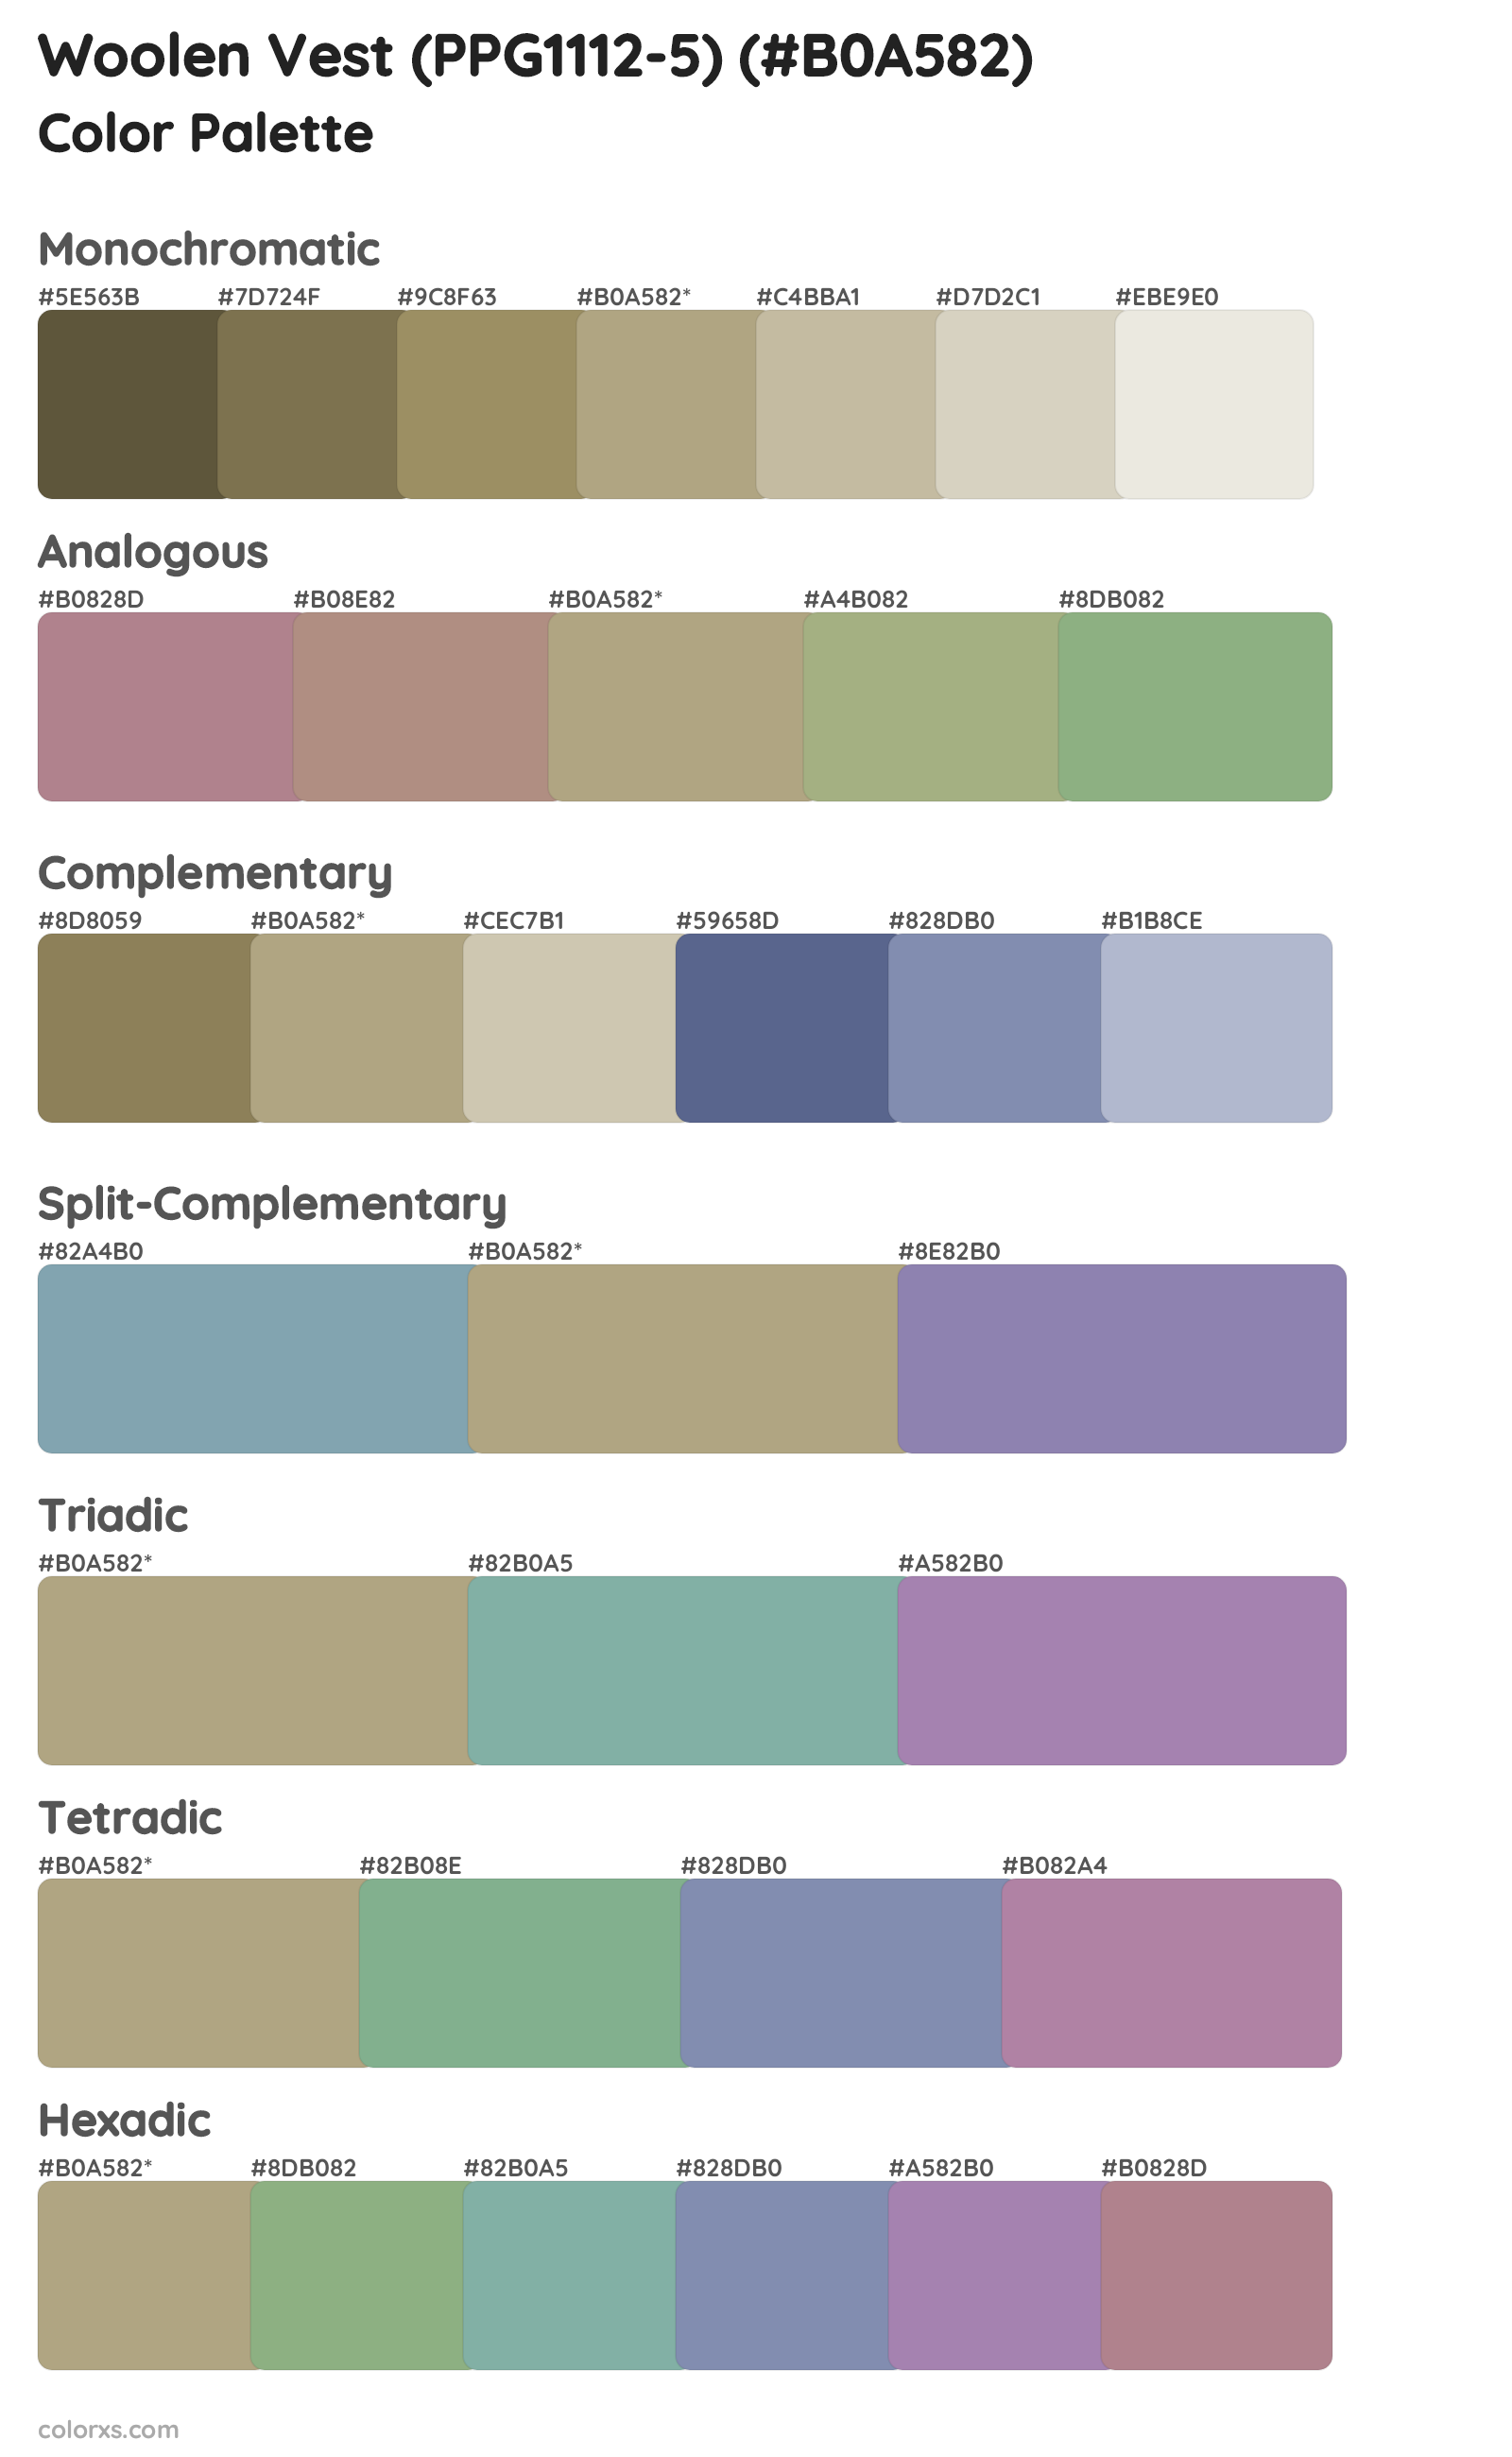 Woolen Vest (PPG1112-5) Color Scheme Palettes